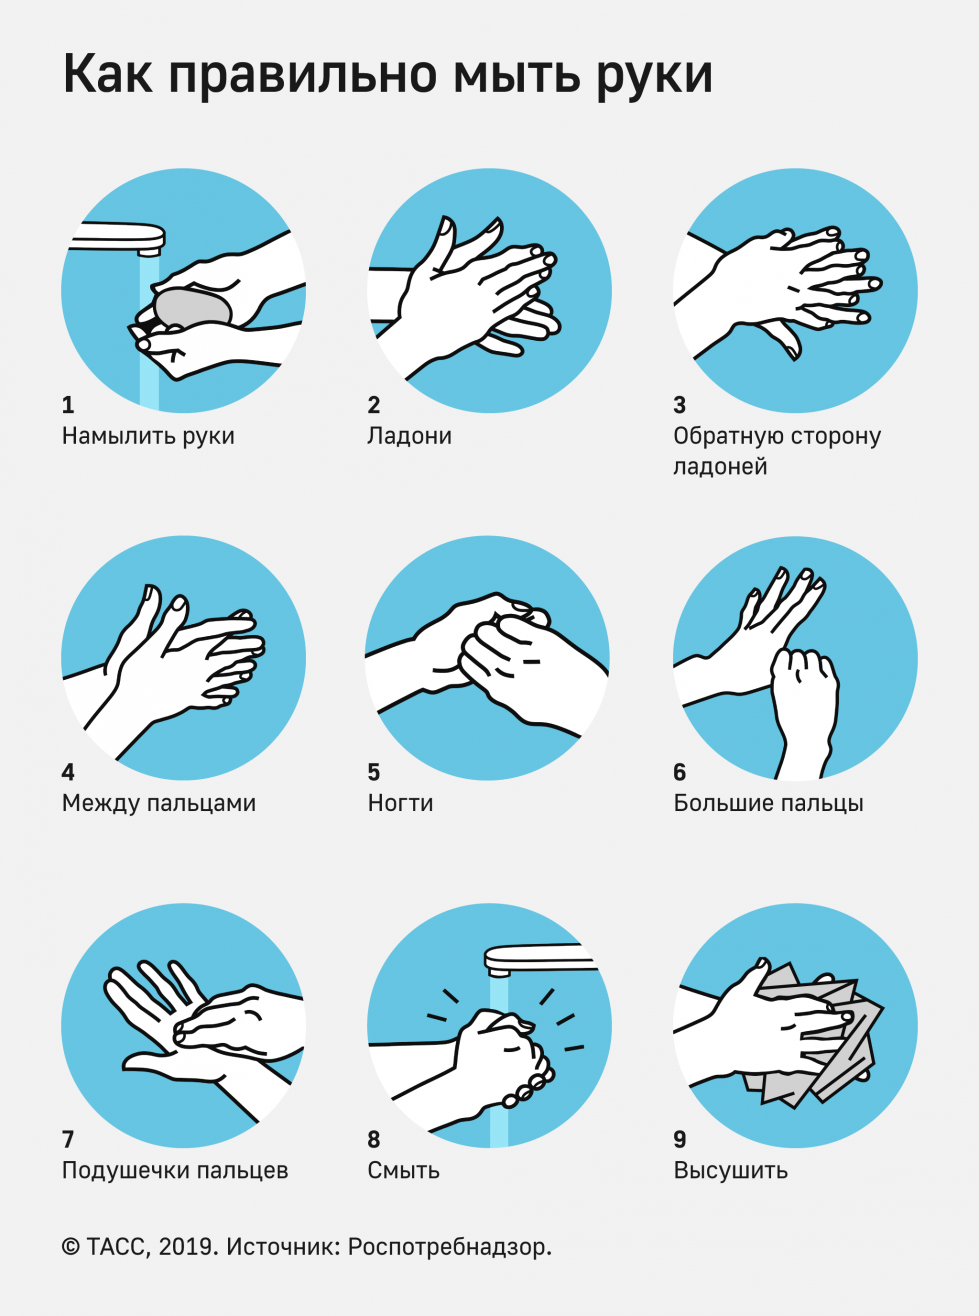 Инструкция и правила мытья рук на пищевых предприятиях